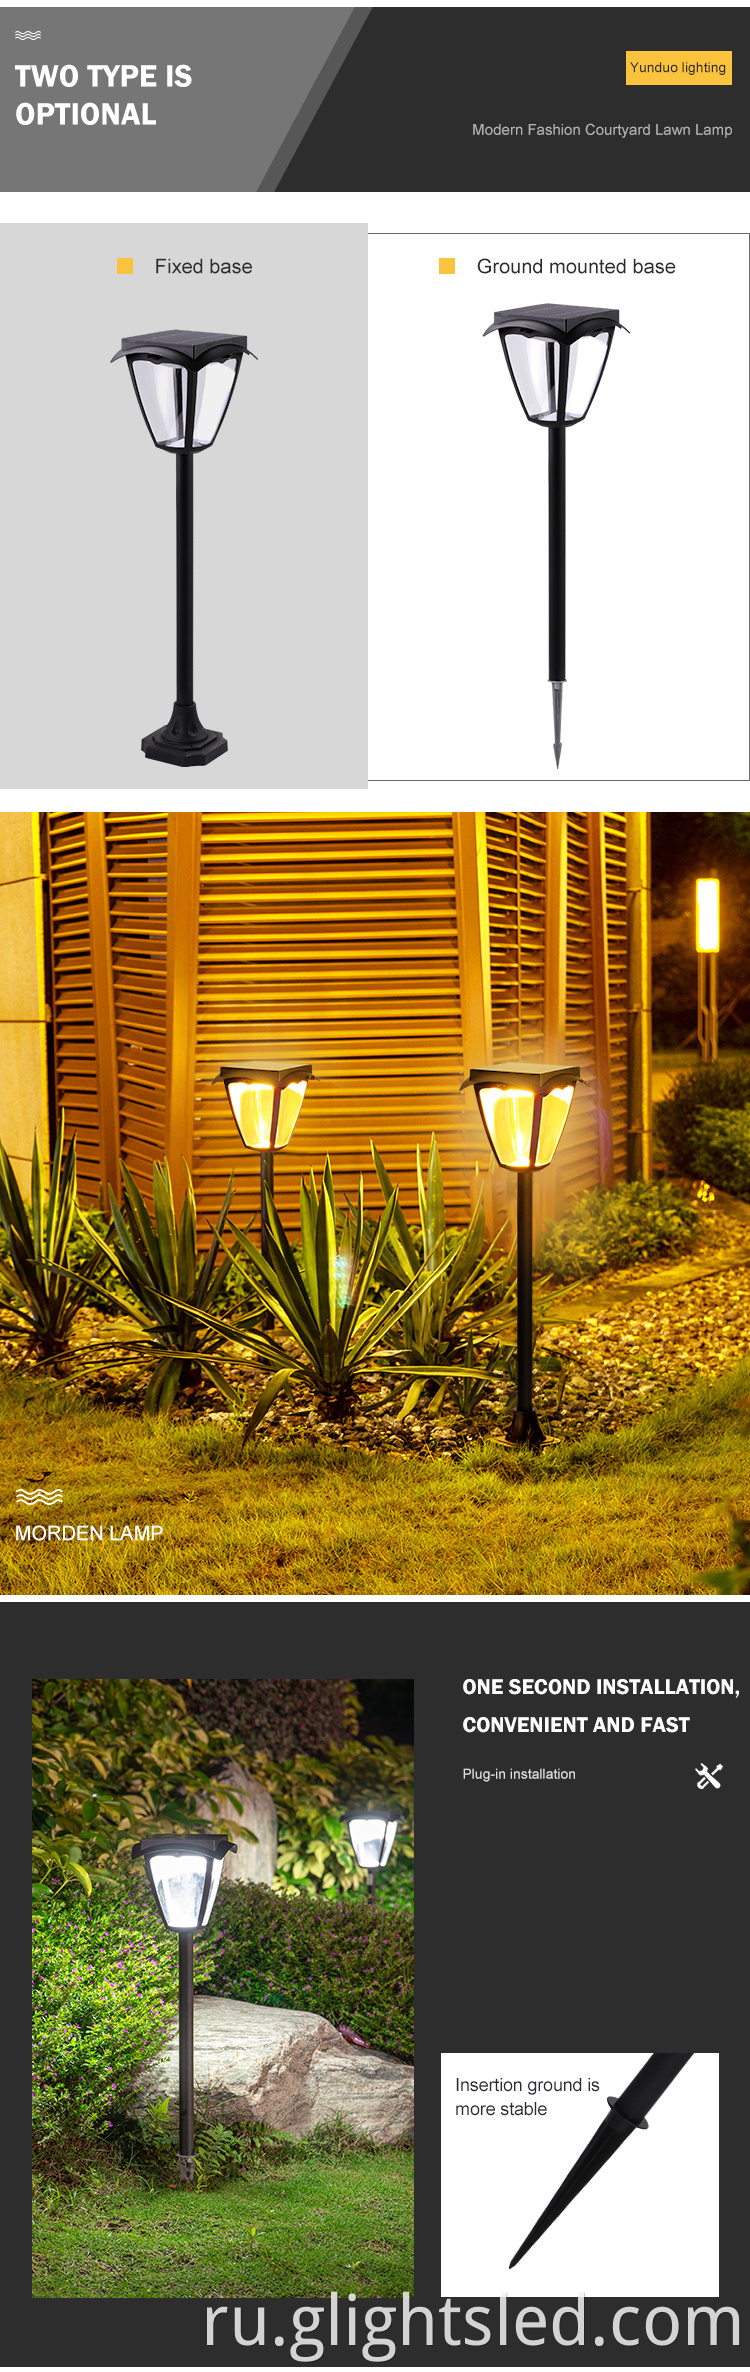 Главная Продукция Двор Дерево Цветок Газон Открытый водонепроницаемый IP55 Сад 1,5 Вт Солнечная светодиодная подсветка